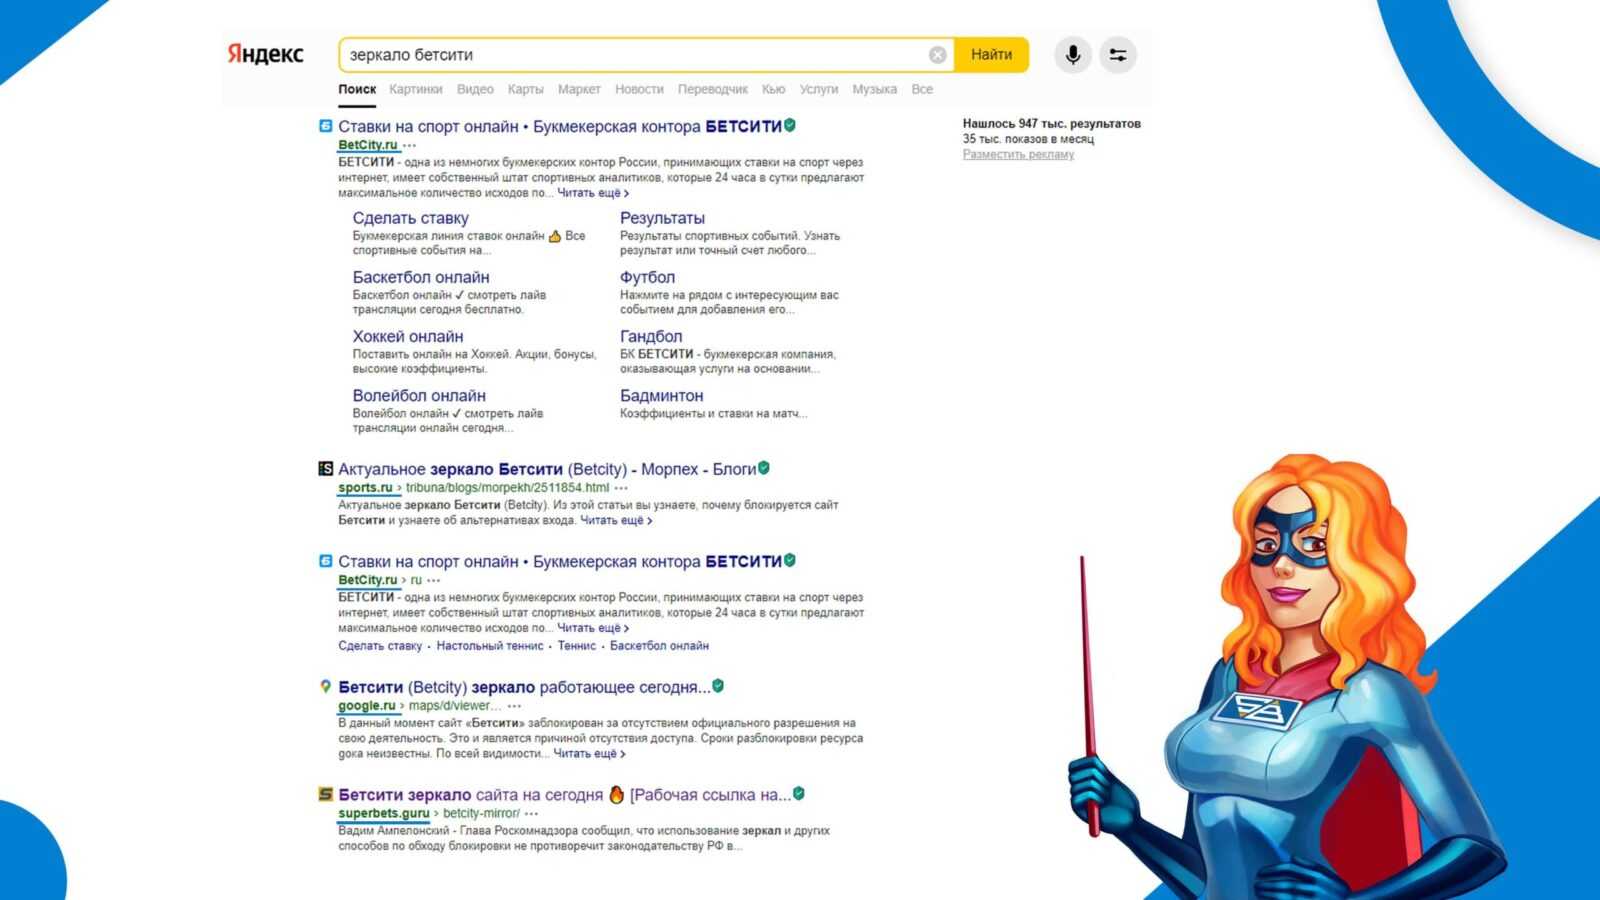 Поиск действующего зеркала Бетсити в поисковой ситеме Яндекс